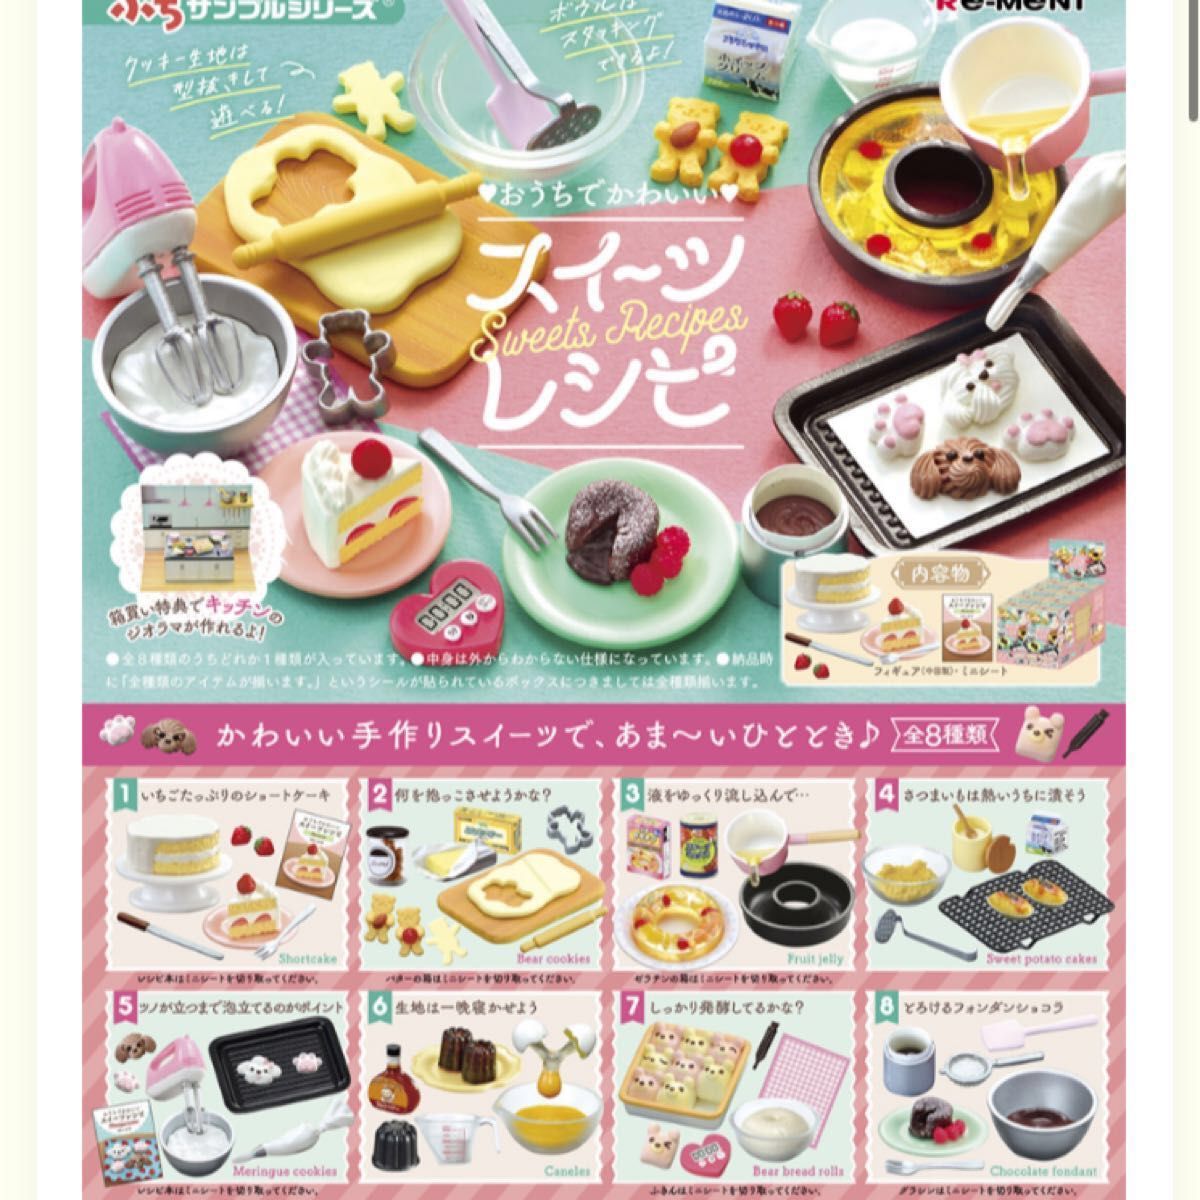 おうちでかわいいスイーツレシピ♪リーメントぷちサンプルお菓子ミニチュアフィギュア